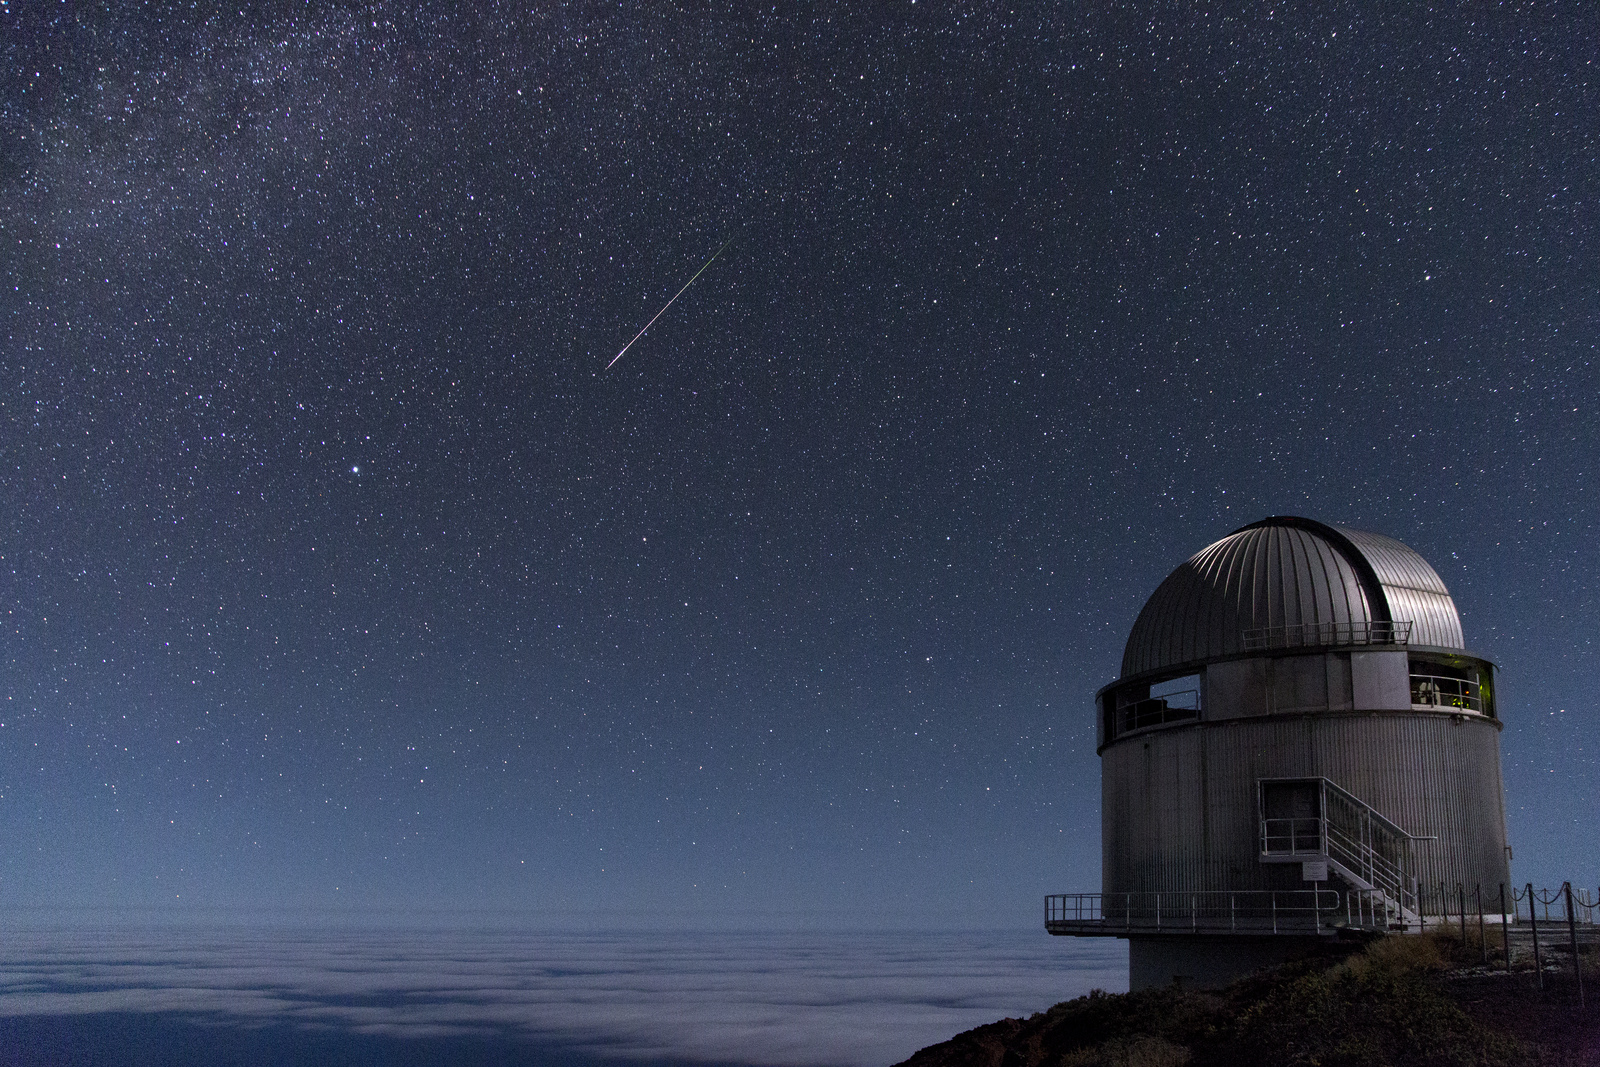 Observatoriet fotograferet en stjerneklar nat, mens en meteor trækker en hvid stribe henover himlen.